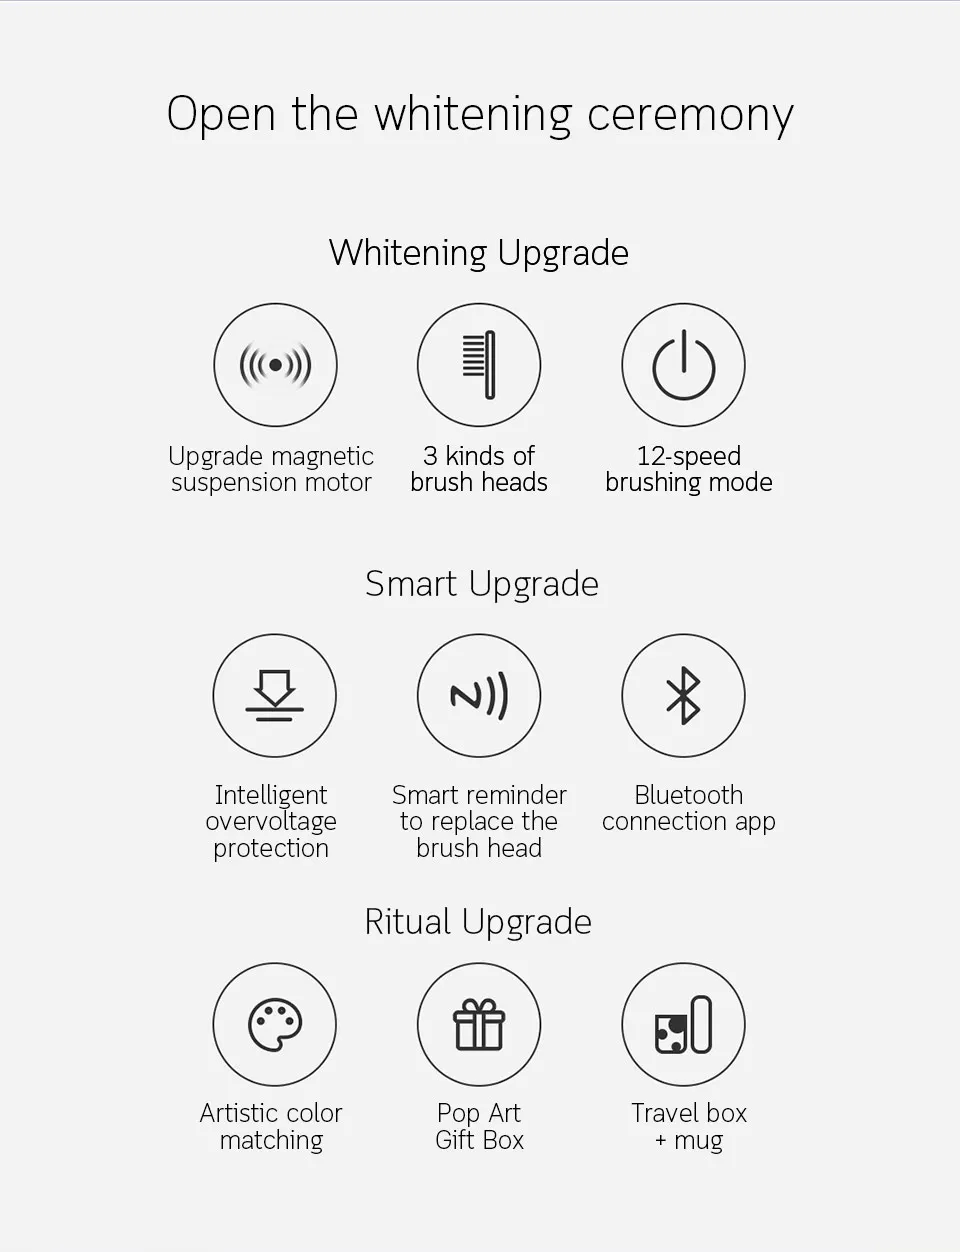 Xiaomi Mijia модернизированная Soocas X5 звуковая электрическая зубная щетка для взрослых водостойкая ультра звуковая автоматическая зубная щетка USB перезаряжаемая